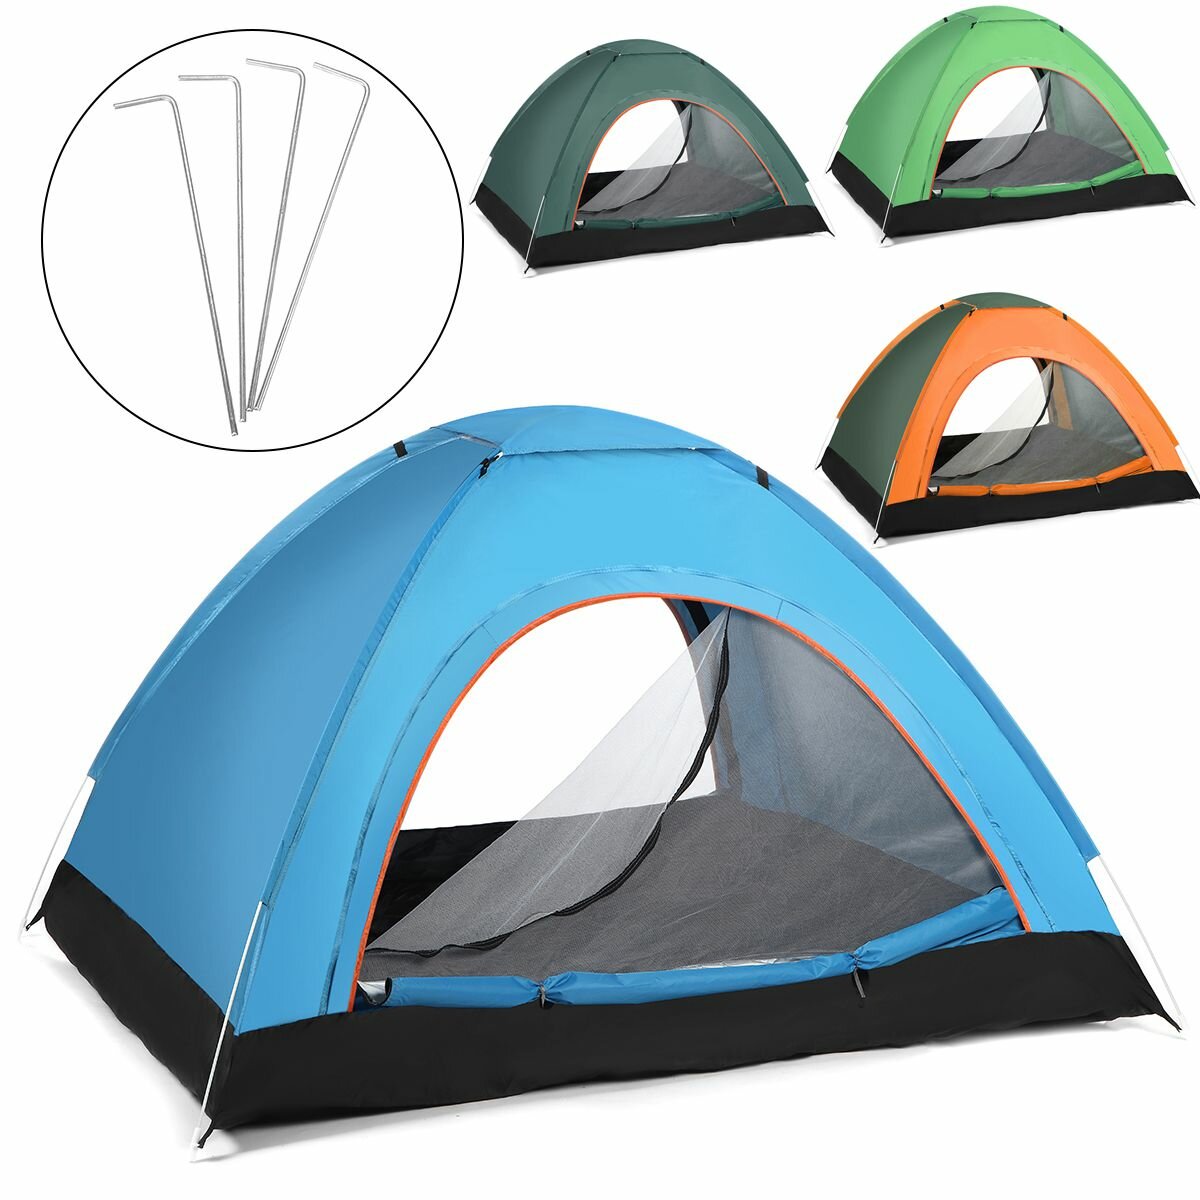 2-3 kişilik tam otomatik anti-UV rüzgar geçirmez su geçirmez kamp çadırı, açık hava seyahatleri, yürüyüş ve plaj için ideal.